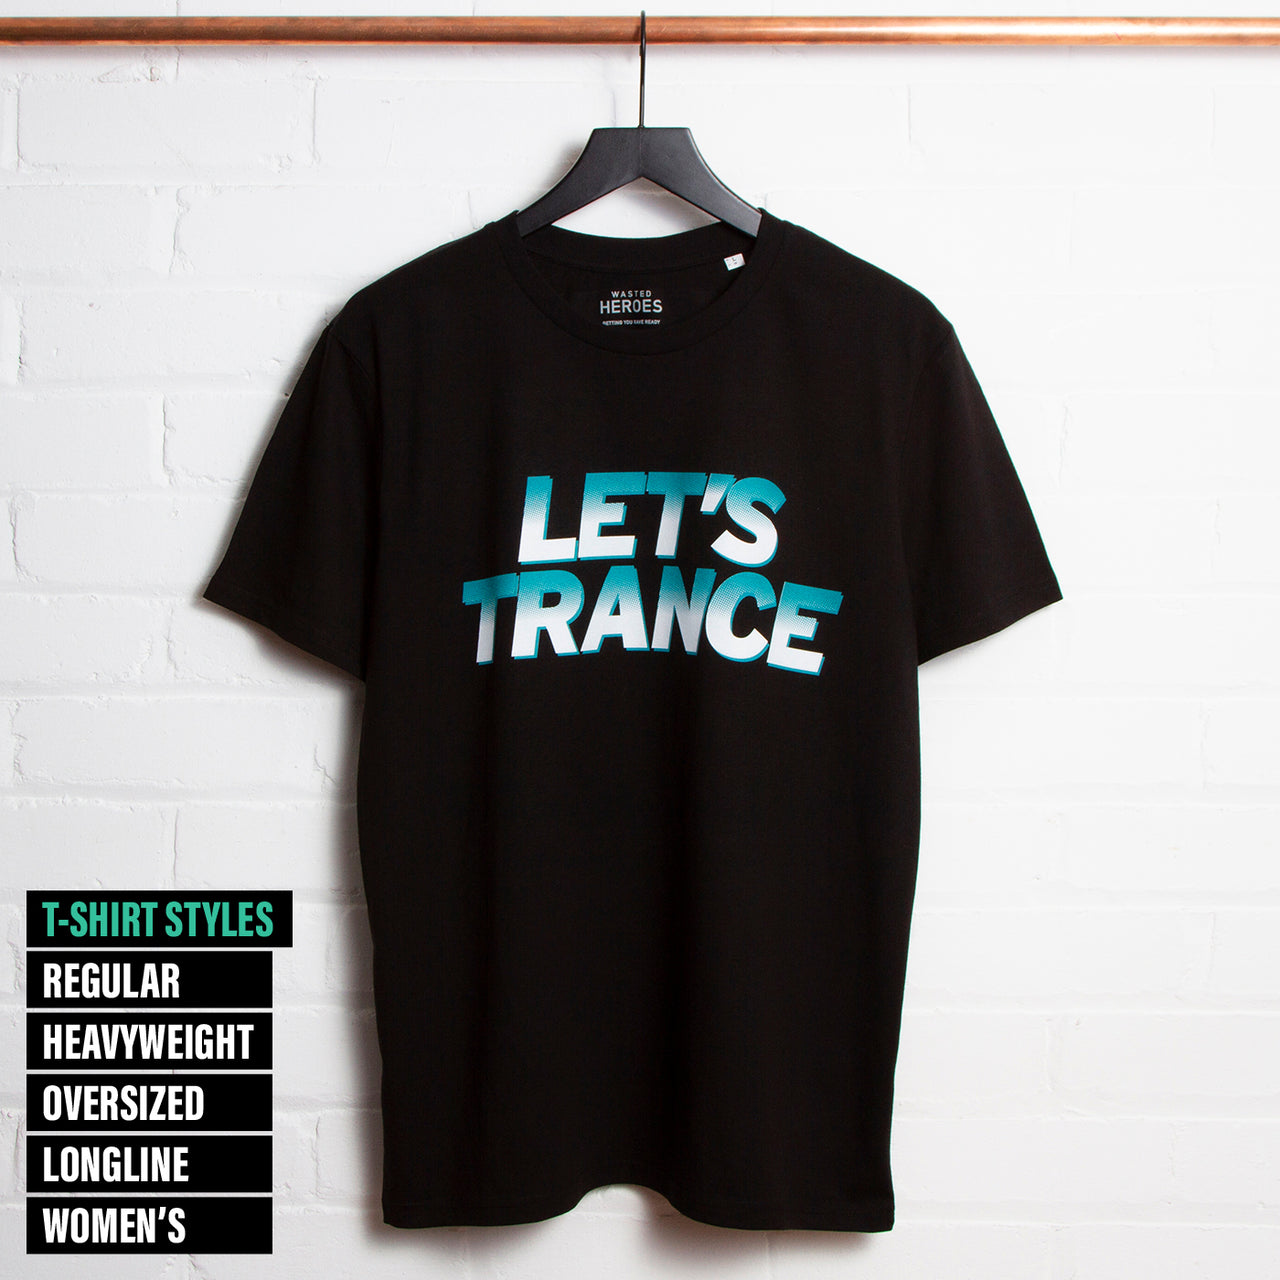 Let's Trance - Tshirt - Black